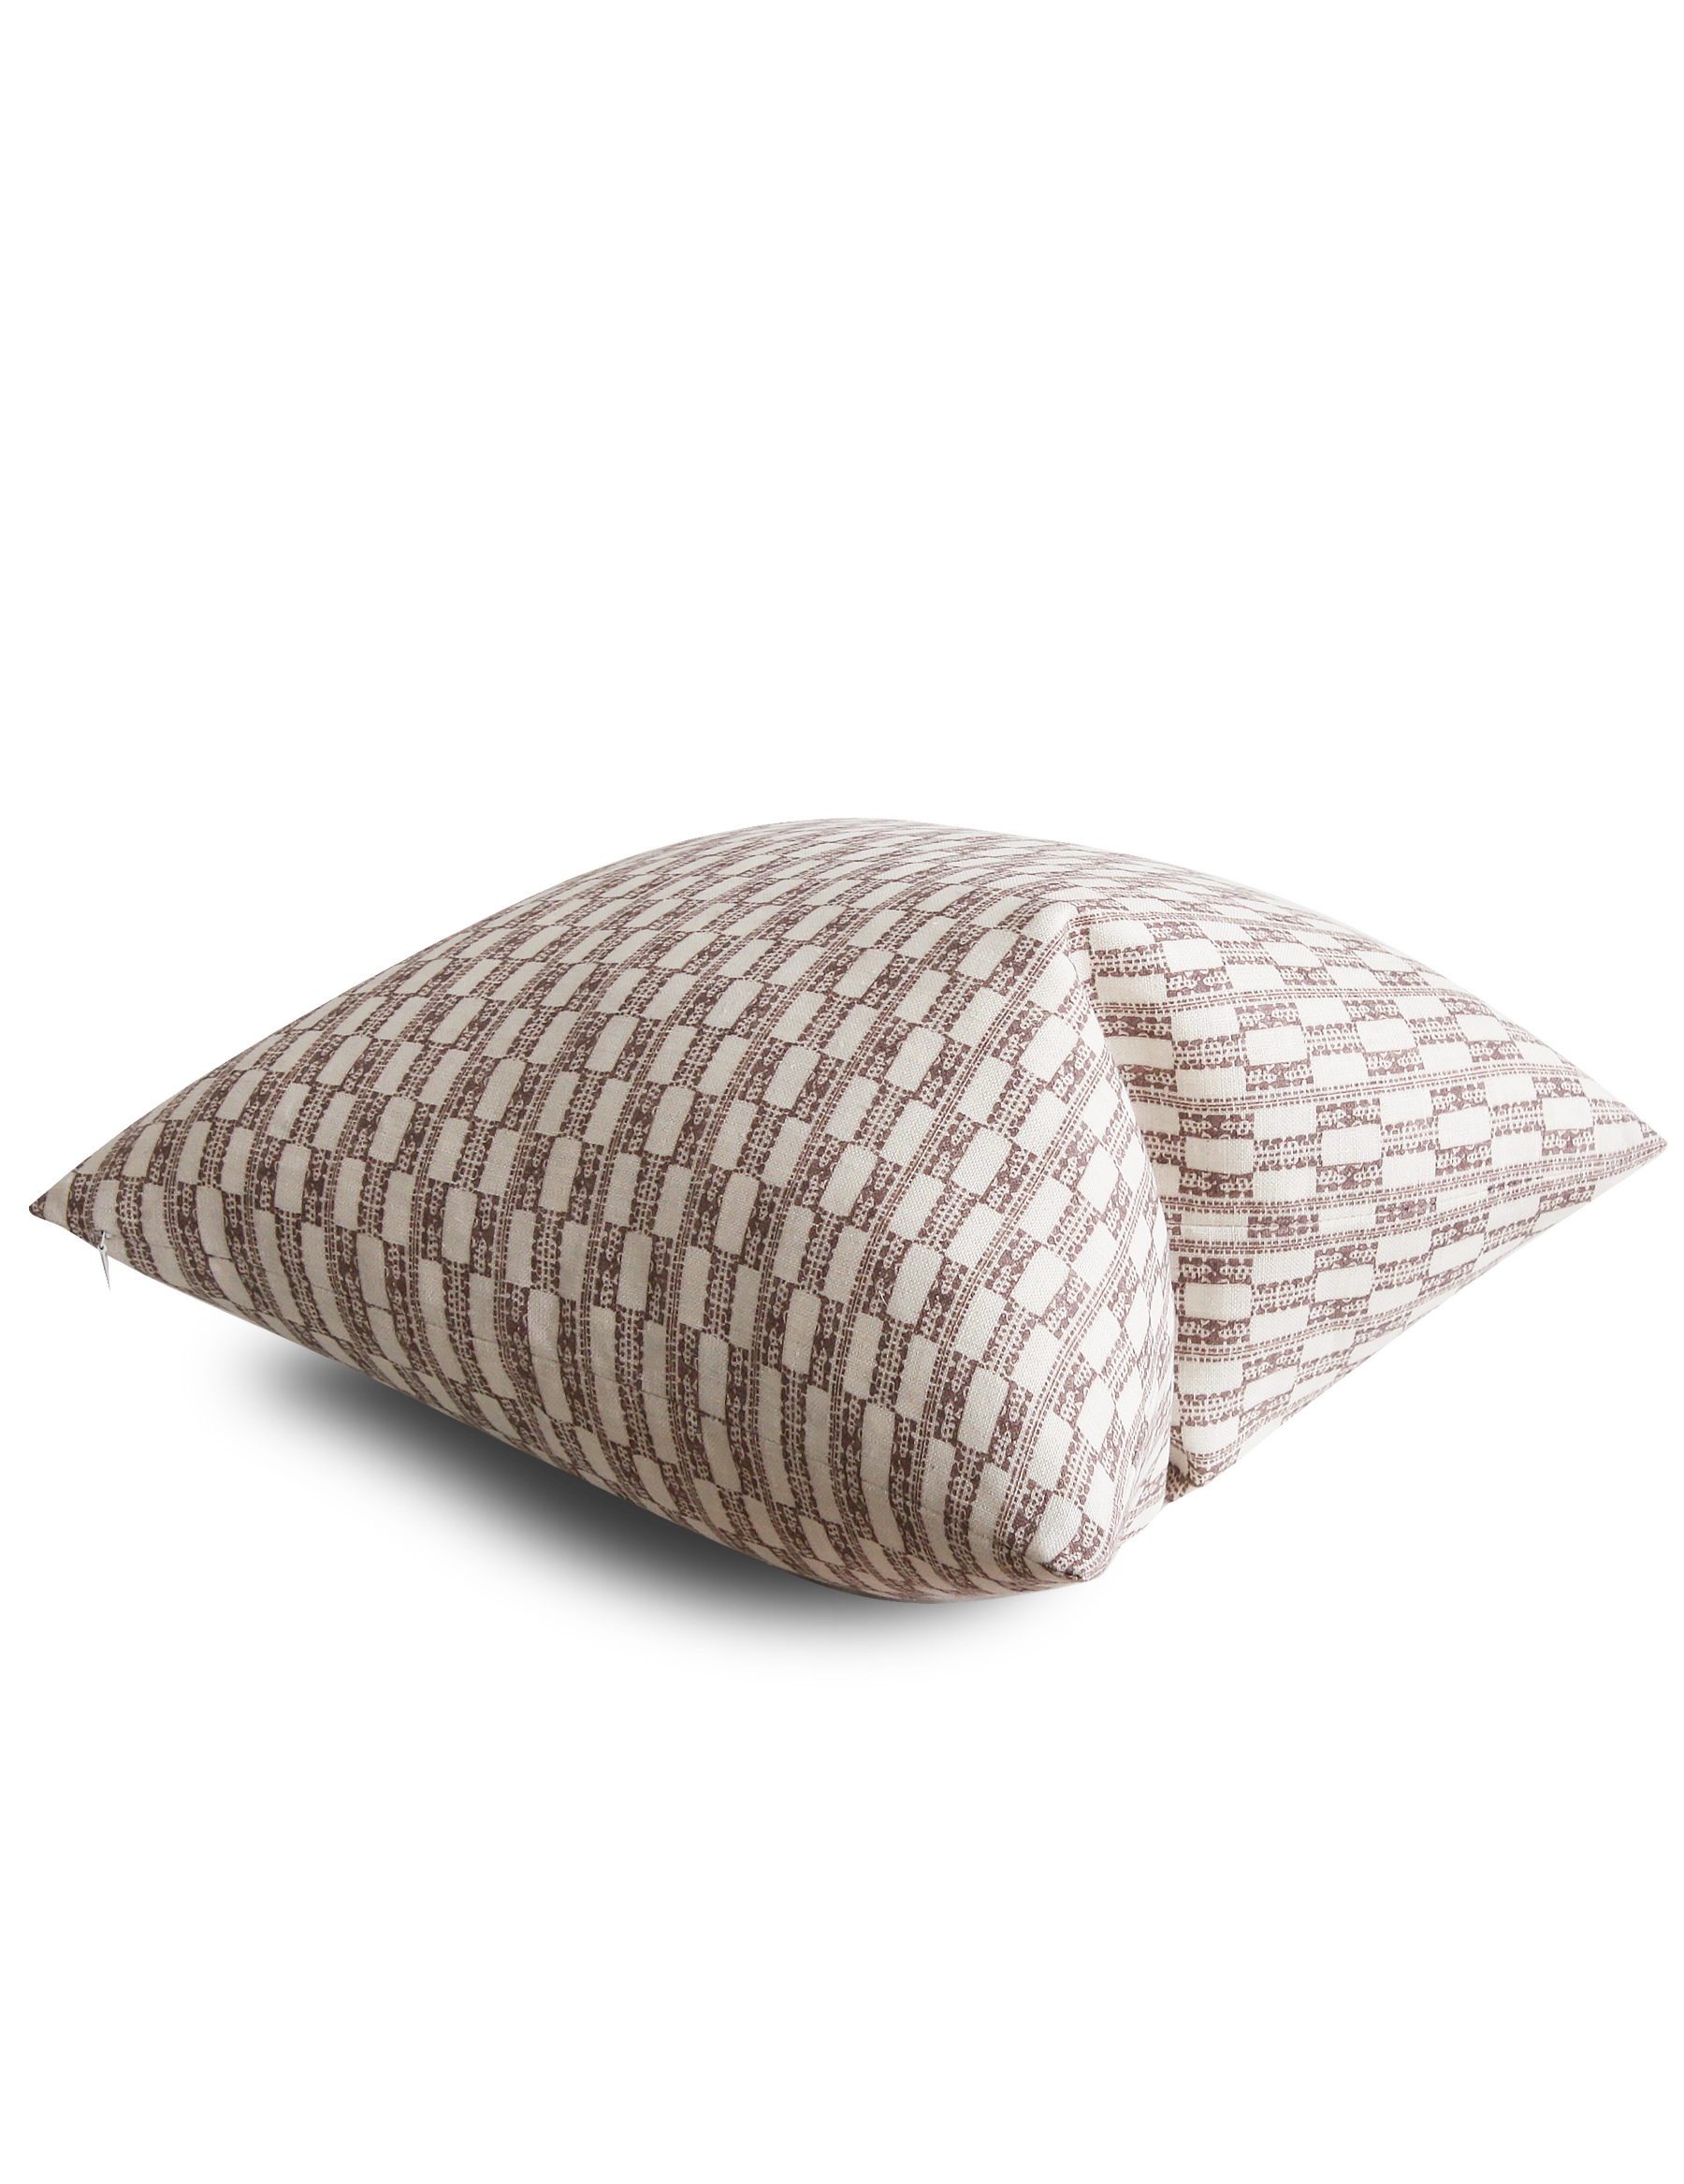 Chekka Pillow / Brick